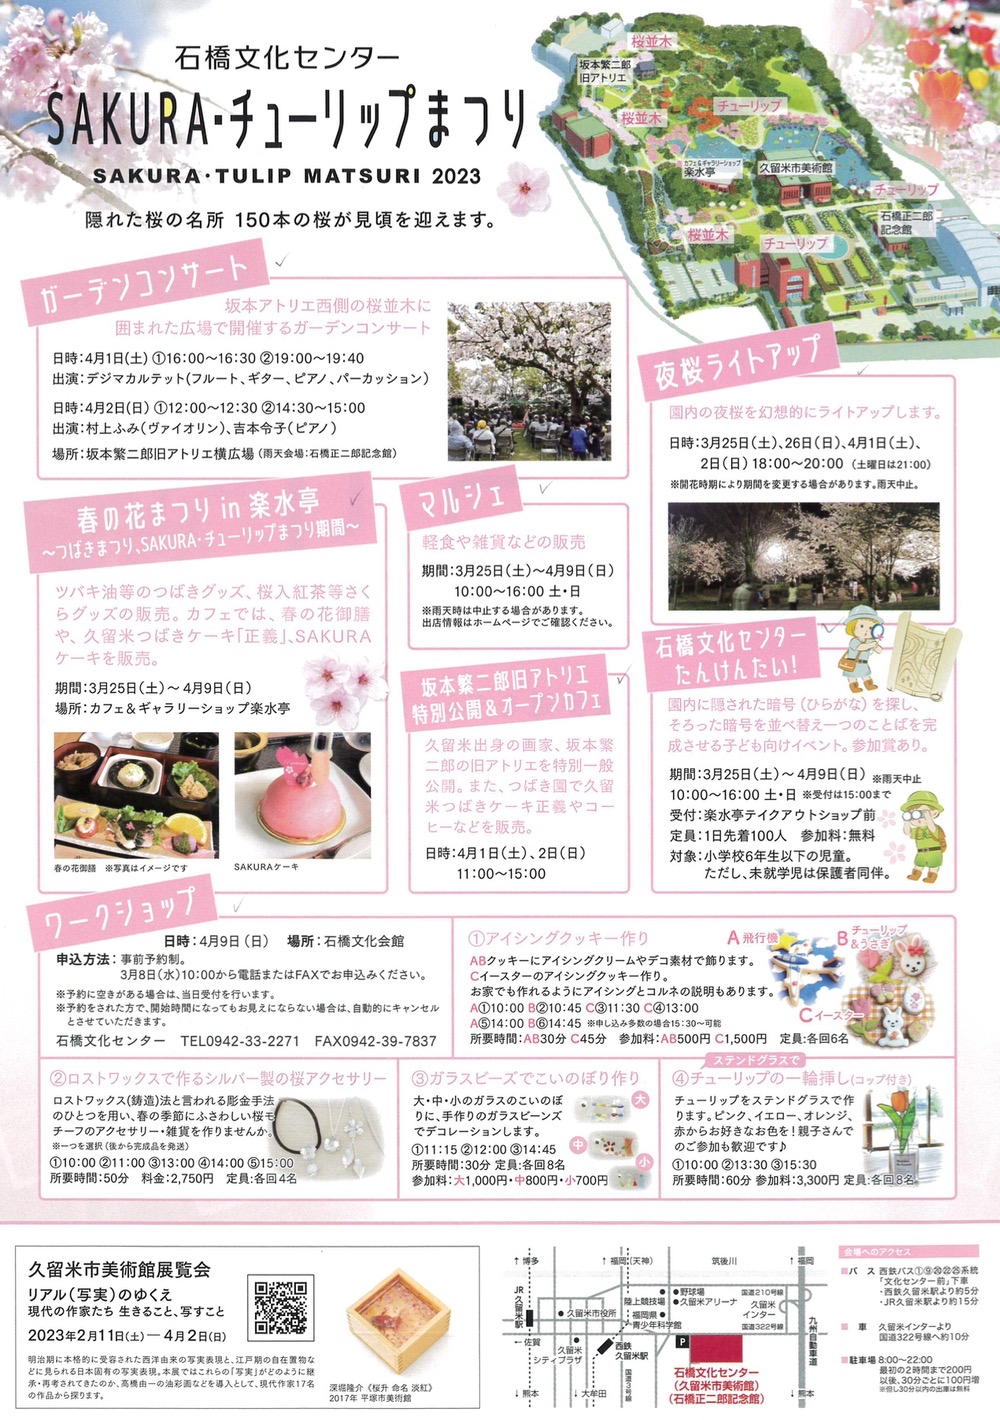 石橋文化センター春の花まつり2023「SAKURA・チューリップまつり」イベント内容